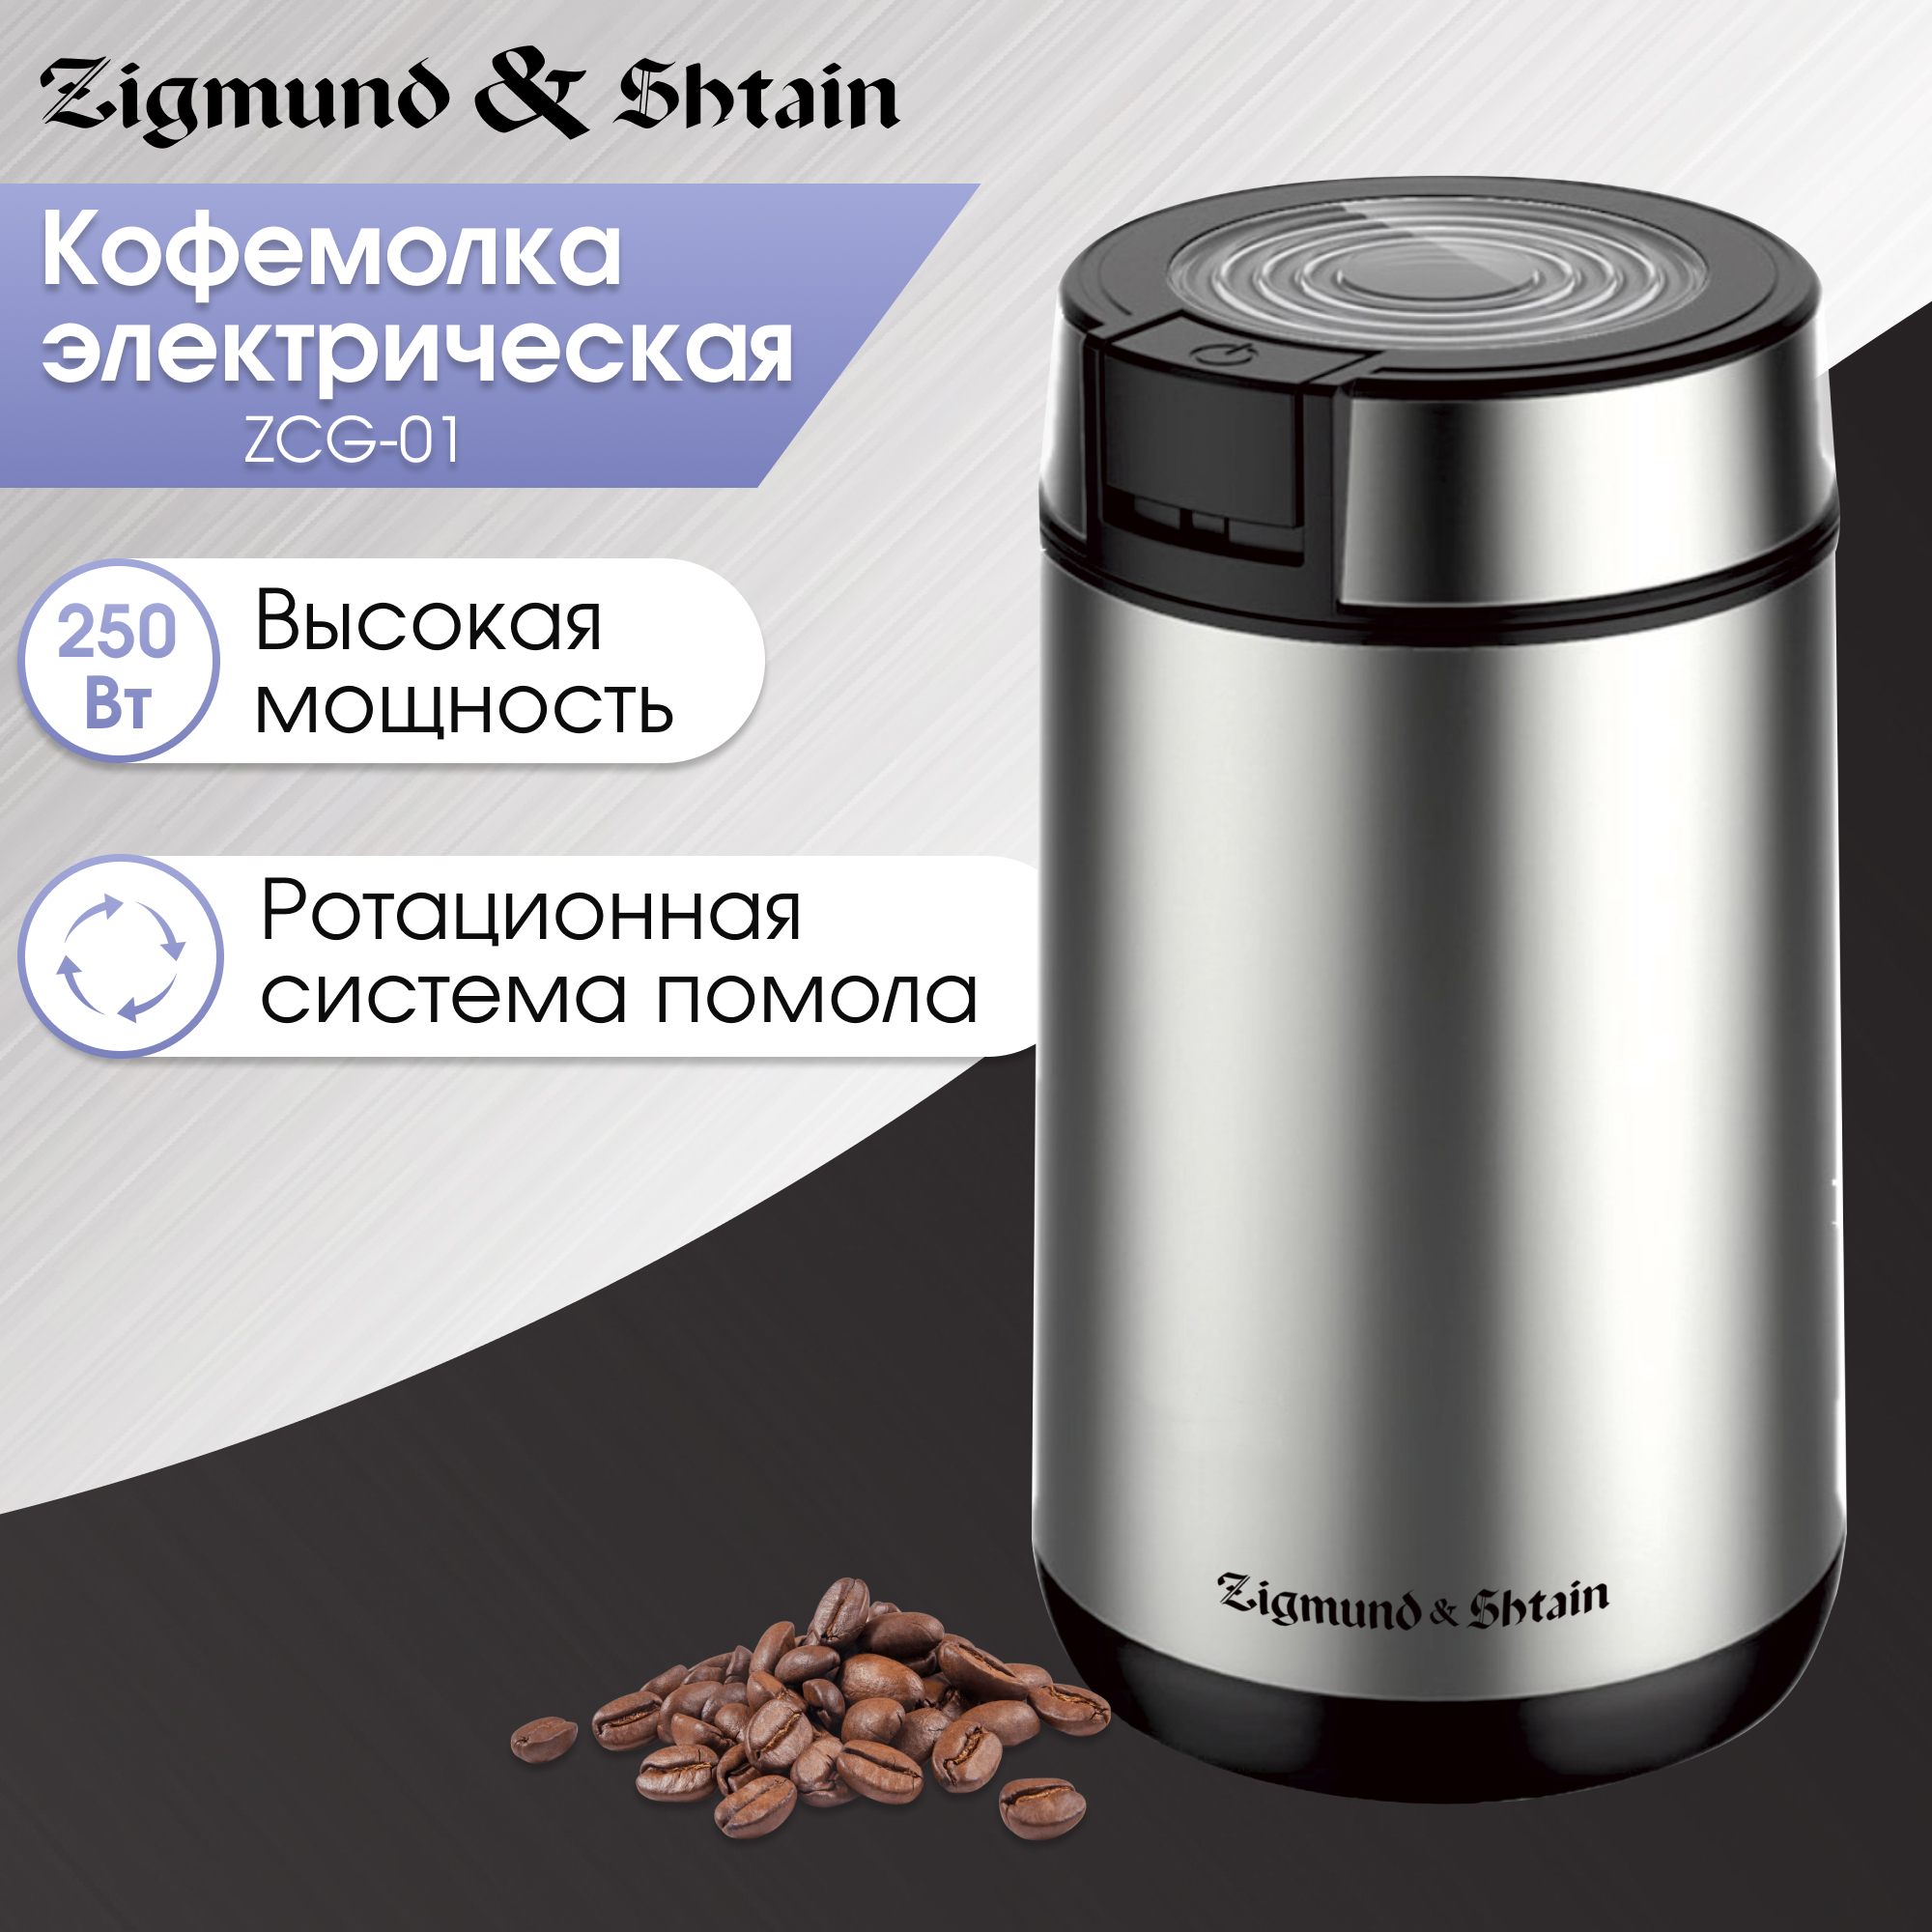 Кофемолка Zigmund & Shtain ZCG-01 серебристый, серый кофемолка energy en 110 электрическая ножевая 150 вт 50 г красная